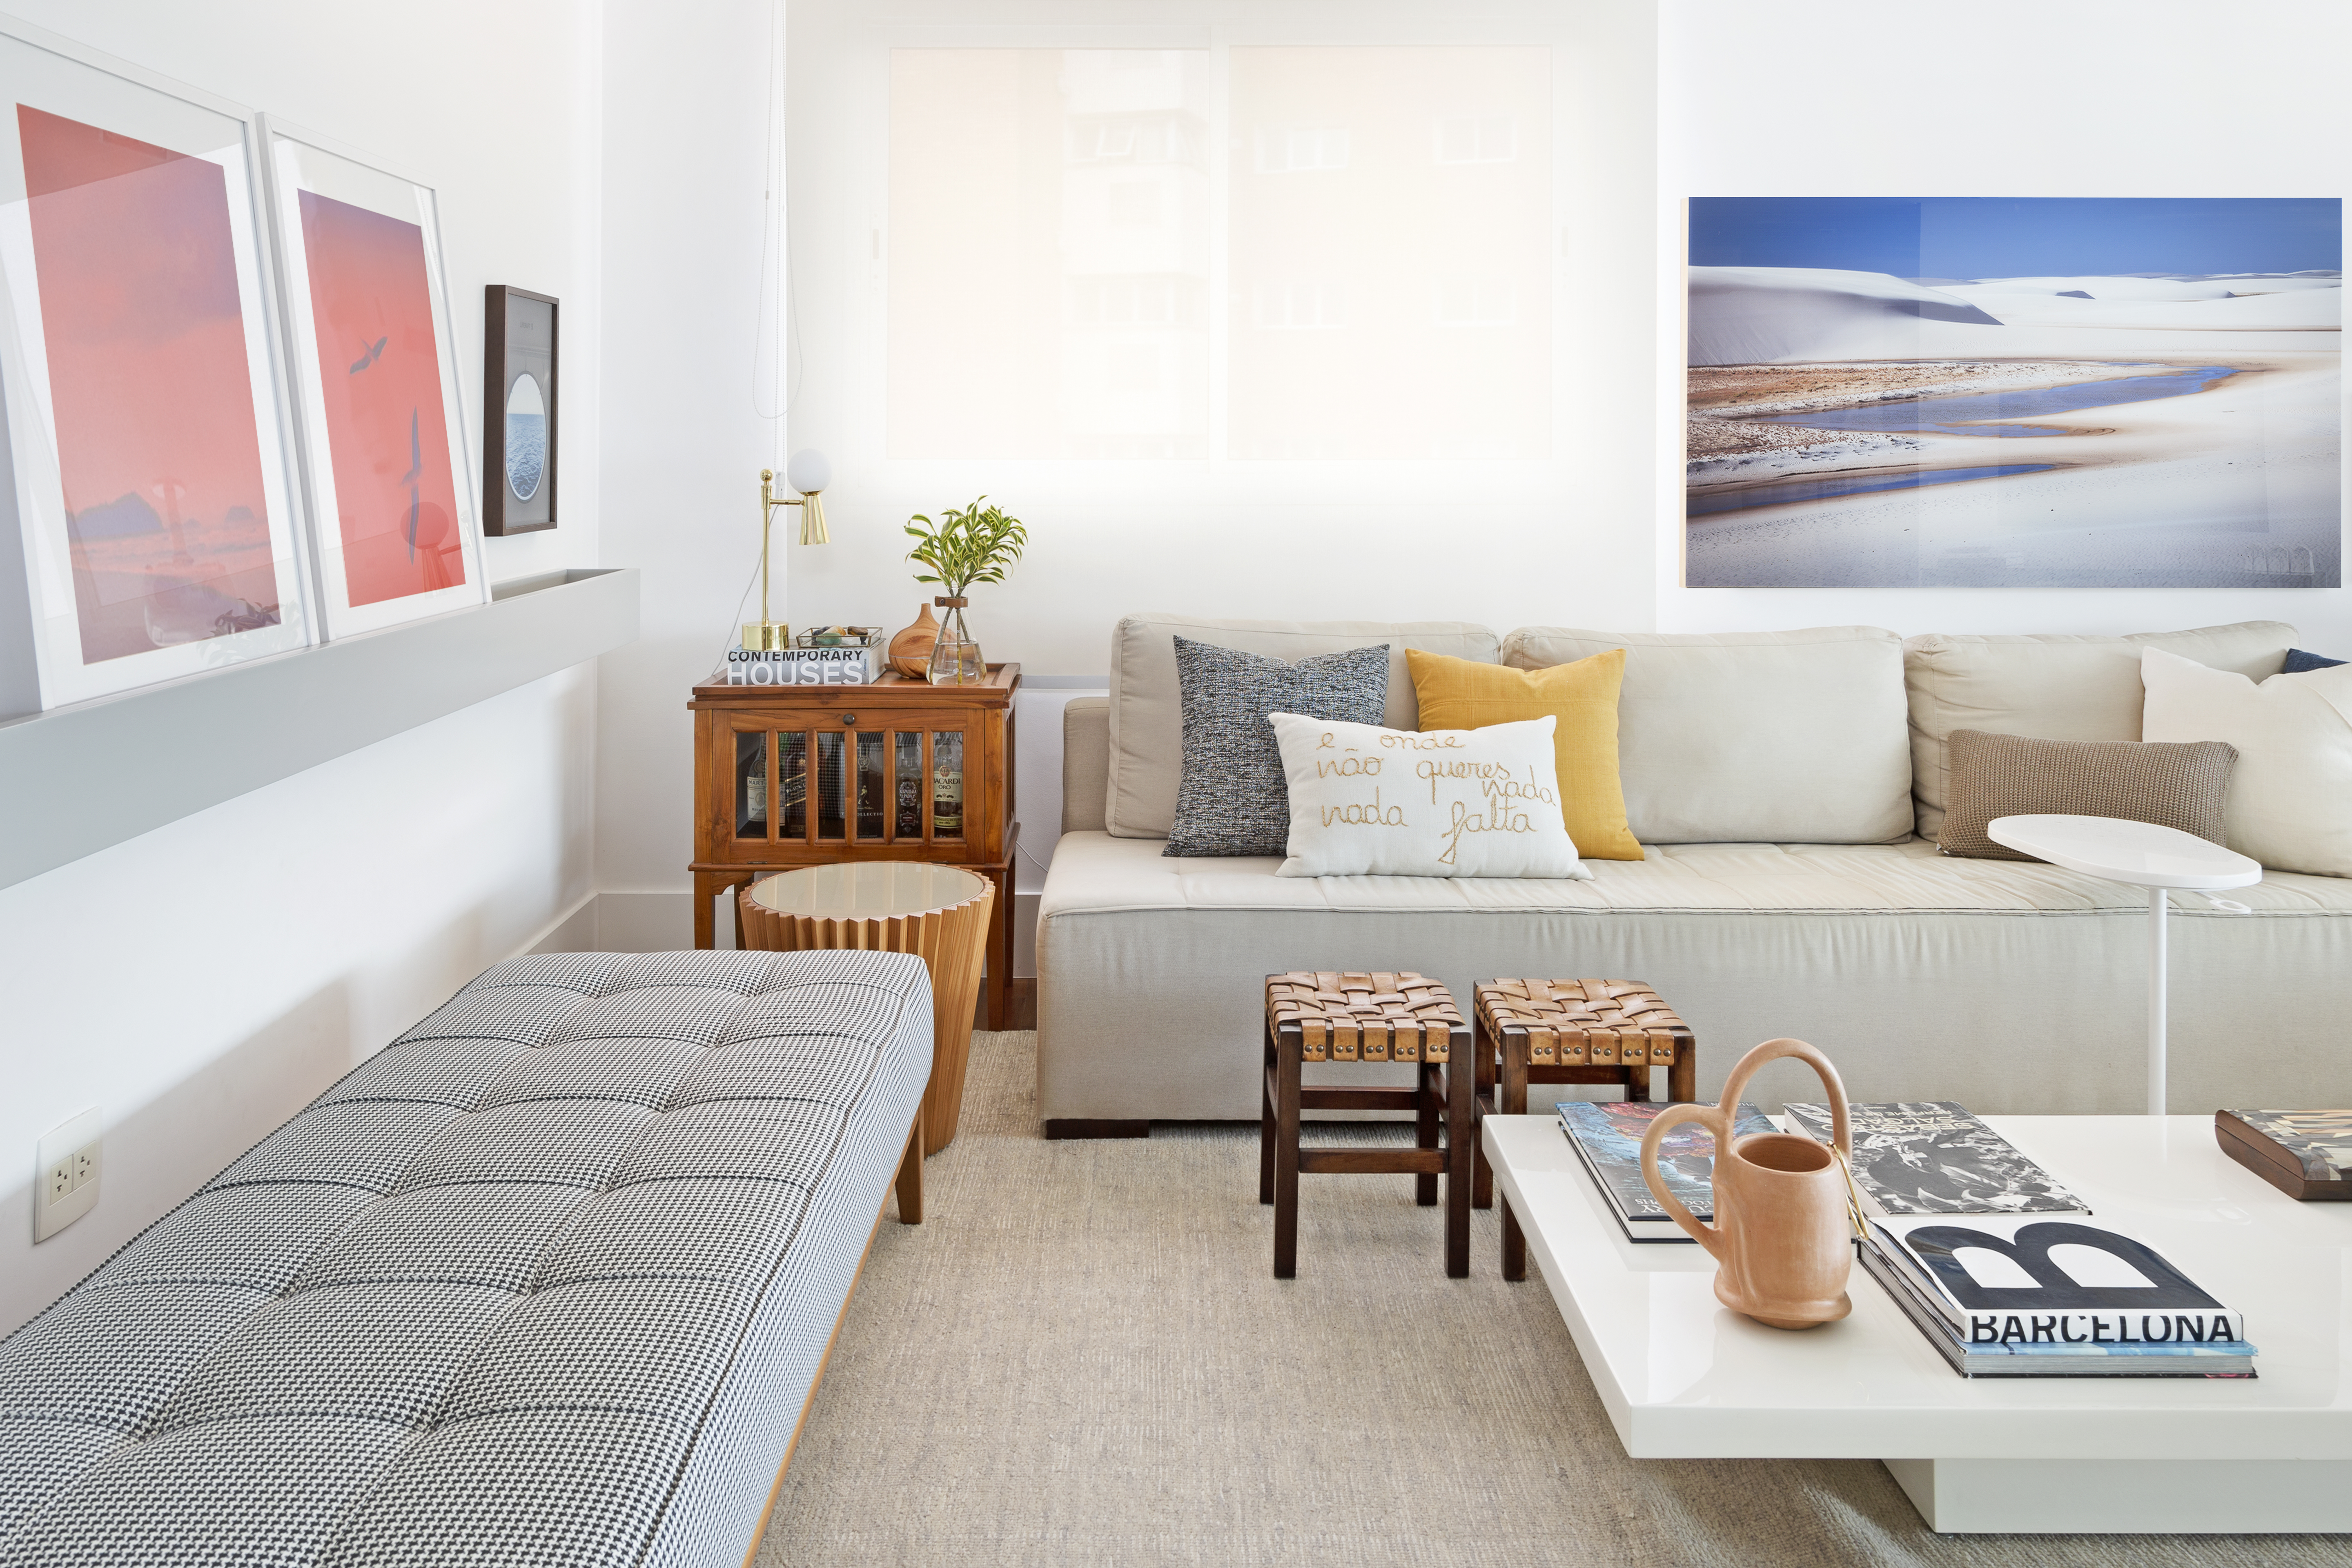 Apartamento com espaços integrados para a família conviver feliz